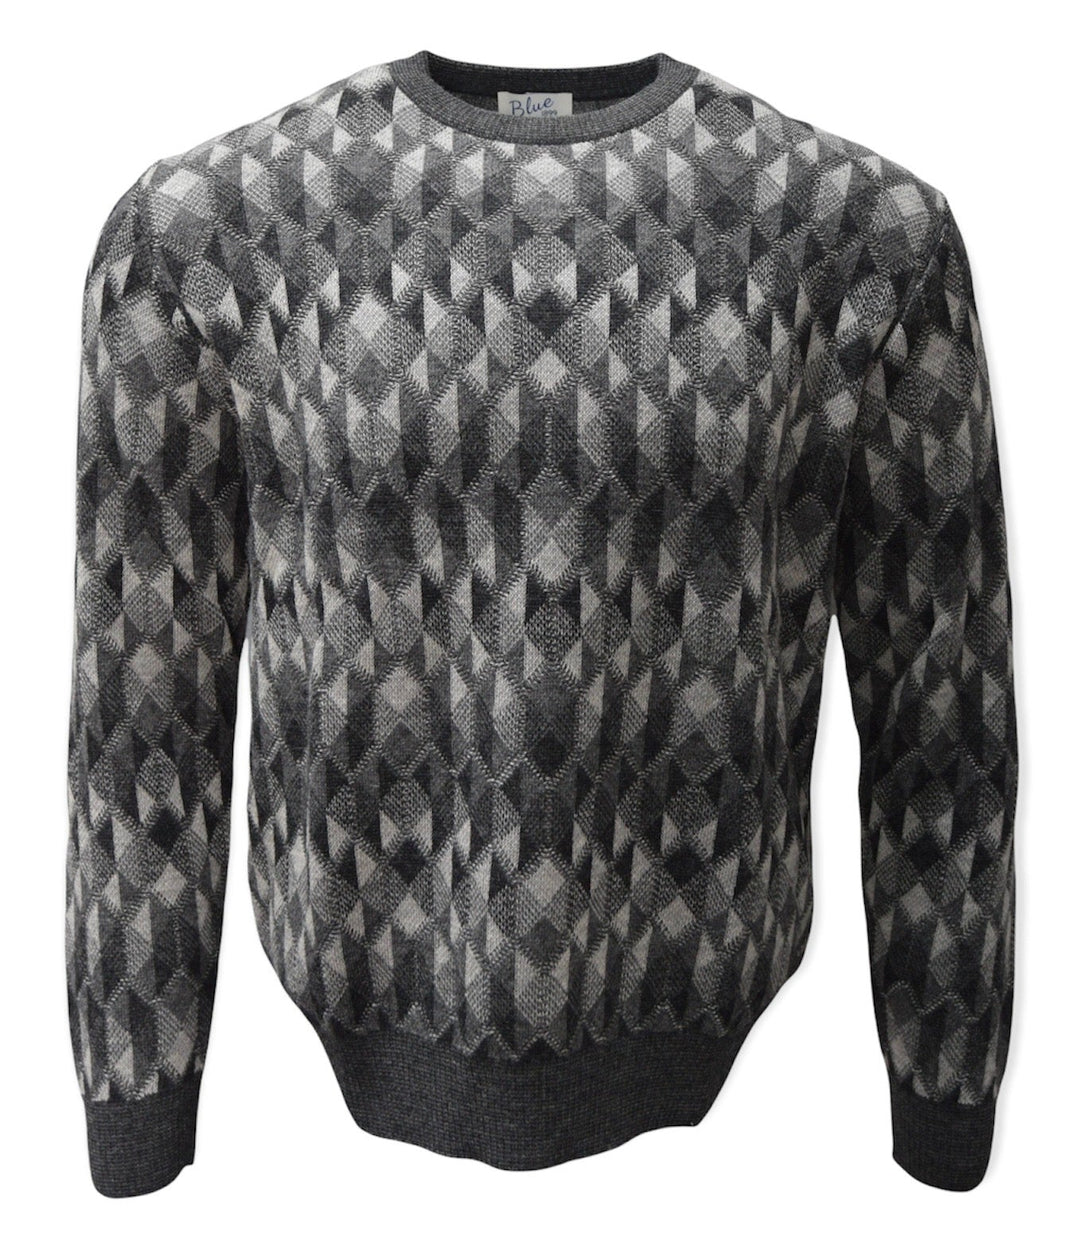 Men's 100% Baby Alpaca Geometric Crewneck Sweater - On Sale!